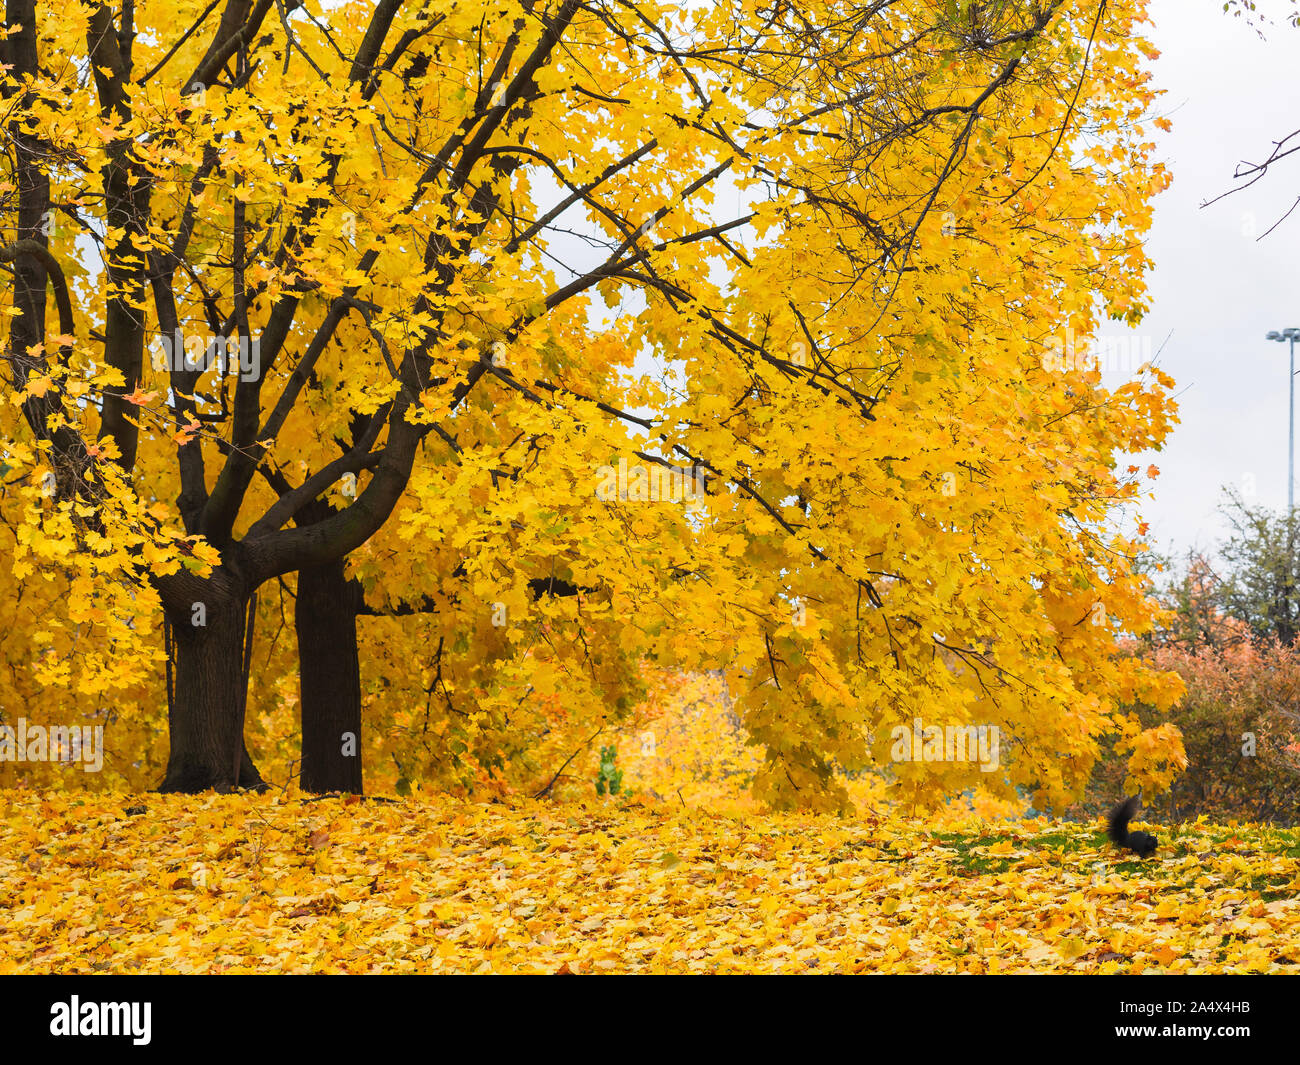 Goldene gelbe Blätter auf Ahorn Baum mit langen Zweigen und ein schwarzes Eichhörnchen, die auf dem Boden. Stockfoto